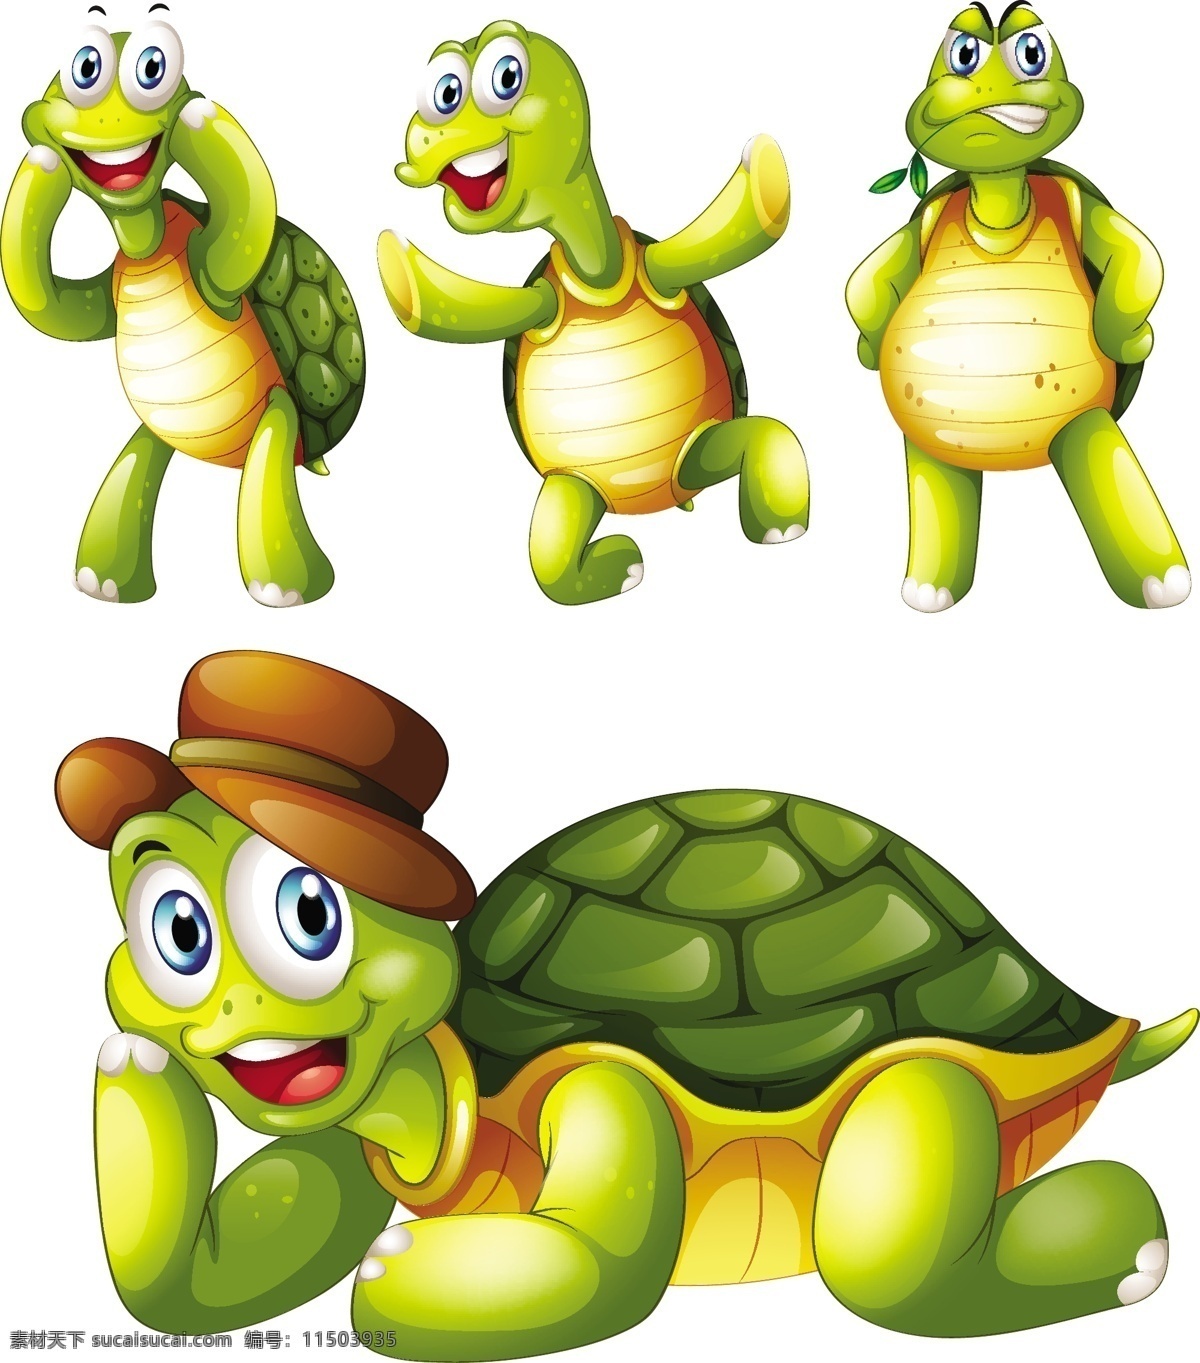 卡通 乌龟 各种 动作 矢 动物 卡通设计 卡通乌龟 动作矢量 乌龟设计 站立的乌龟 乌龟壳 矢量图 矢量人物